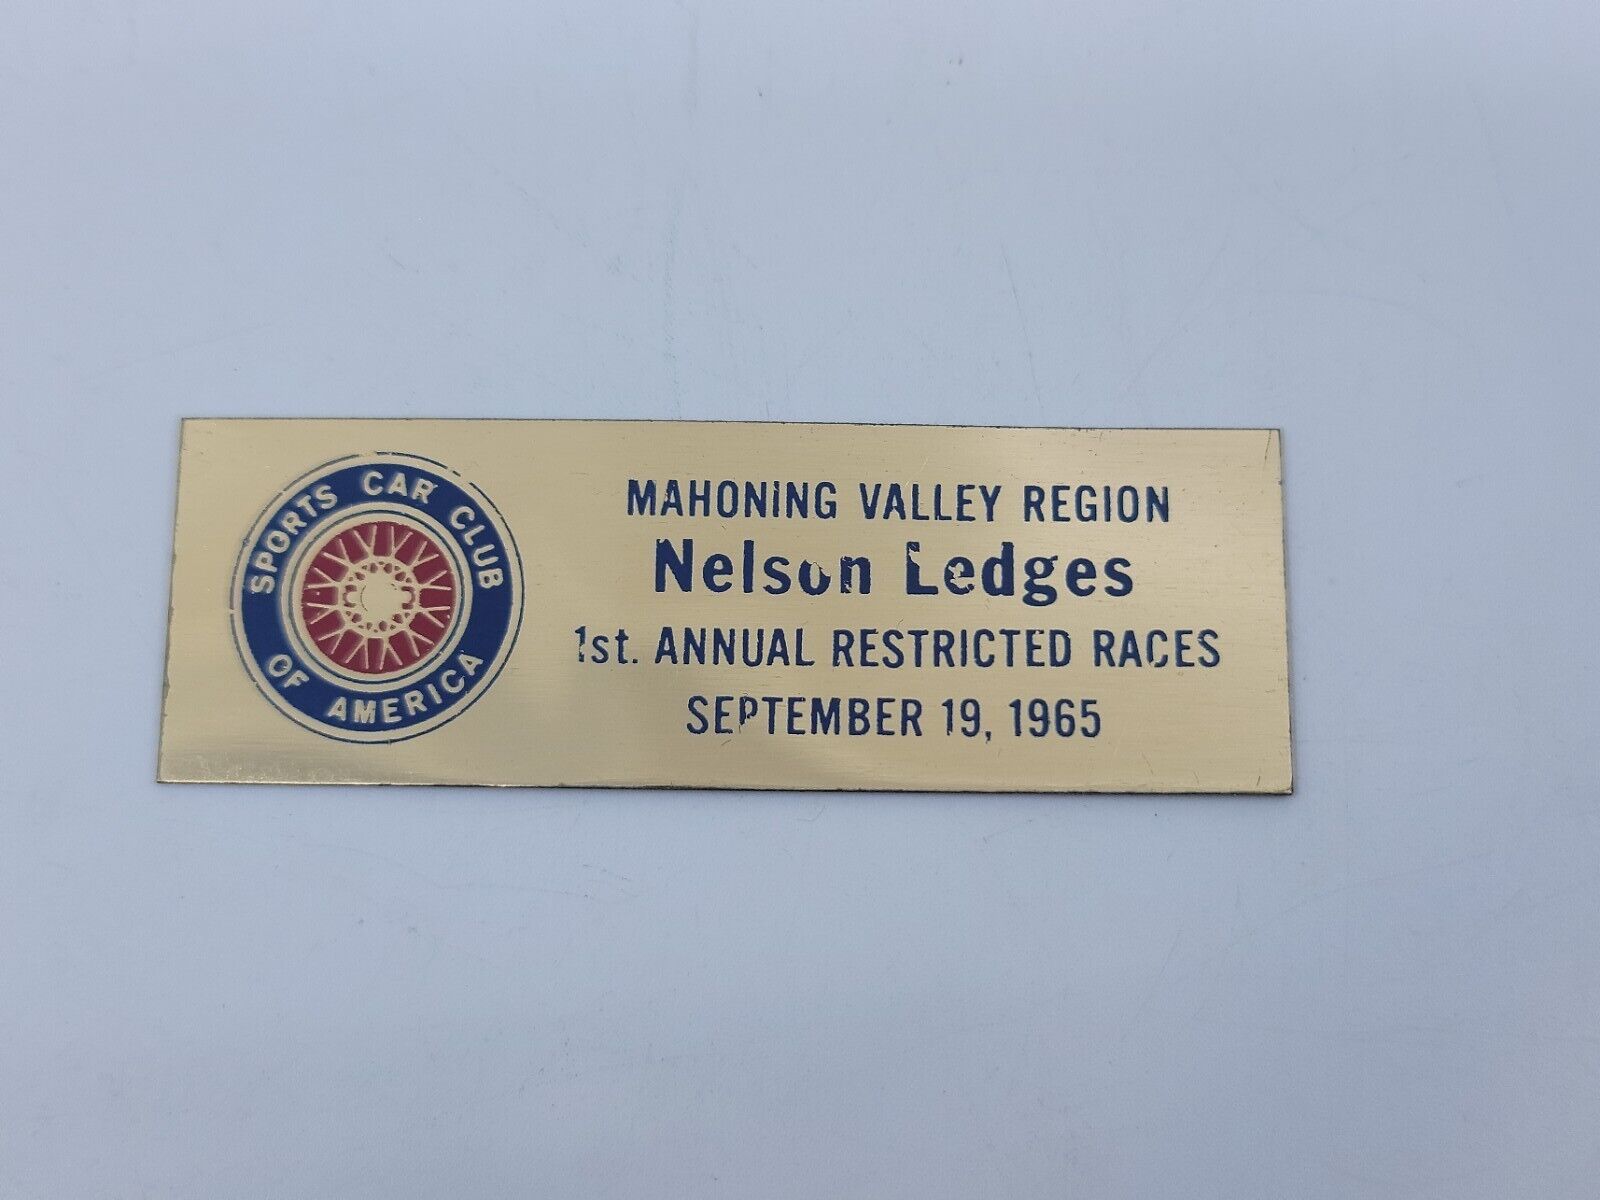 1965 Nelson Ledges Mahoning Valley 1st Restricted Races Dash Emblem Plaque SCCA